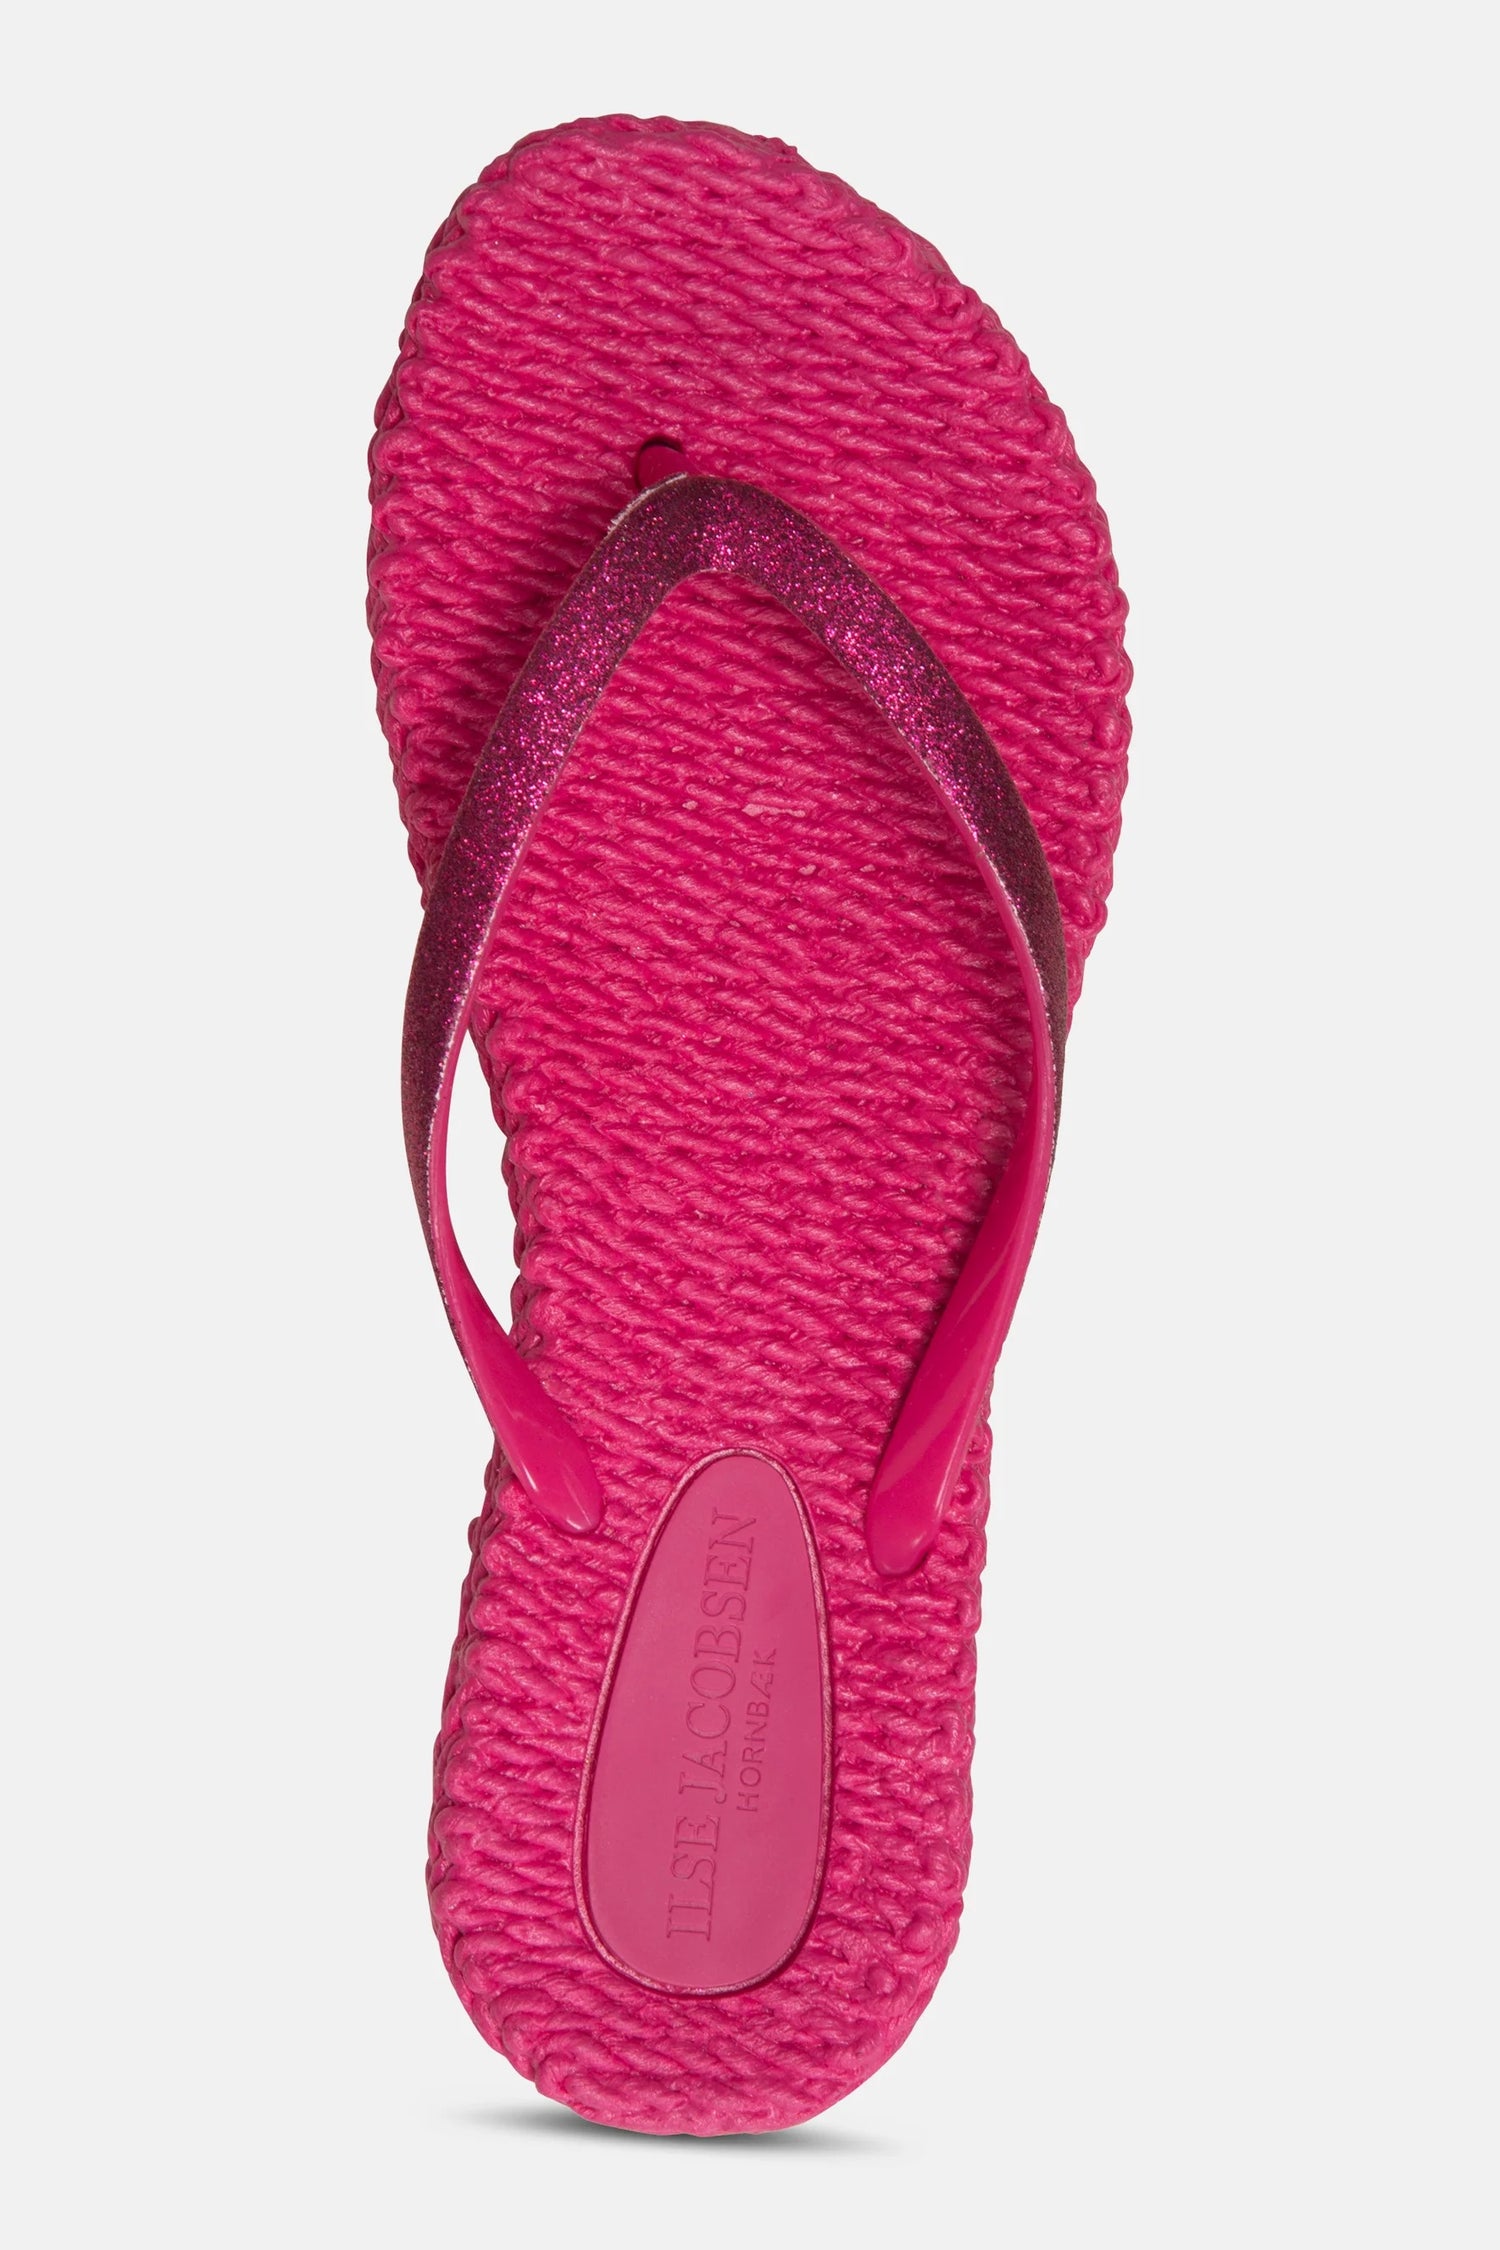 Flip Flop Cheerful01 - Warm Pink